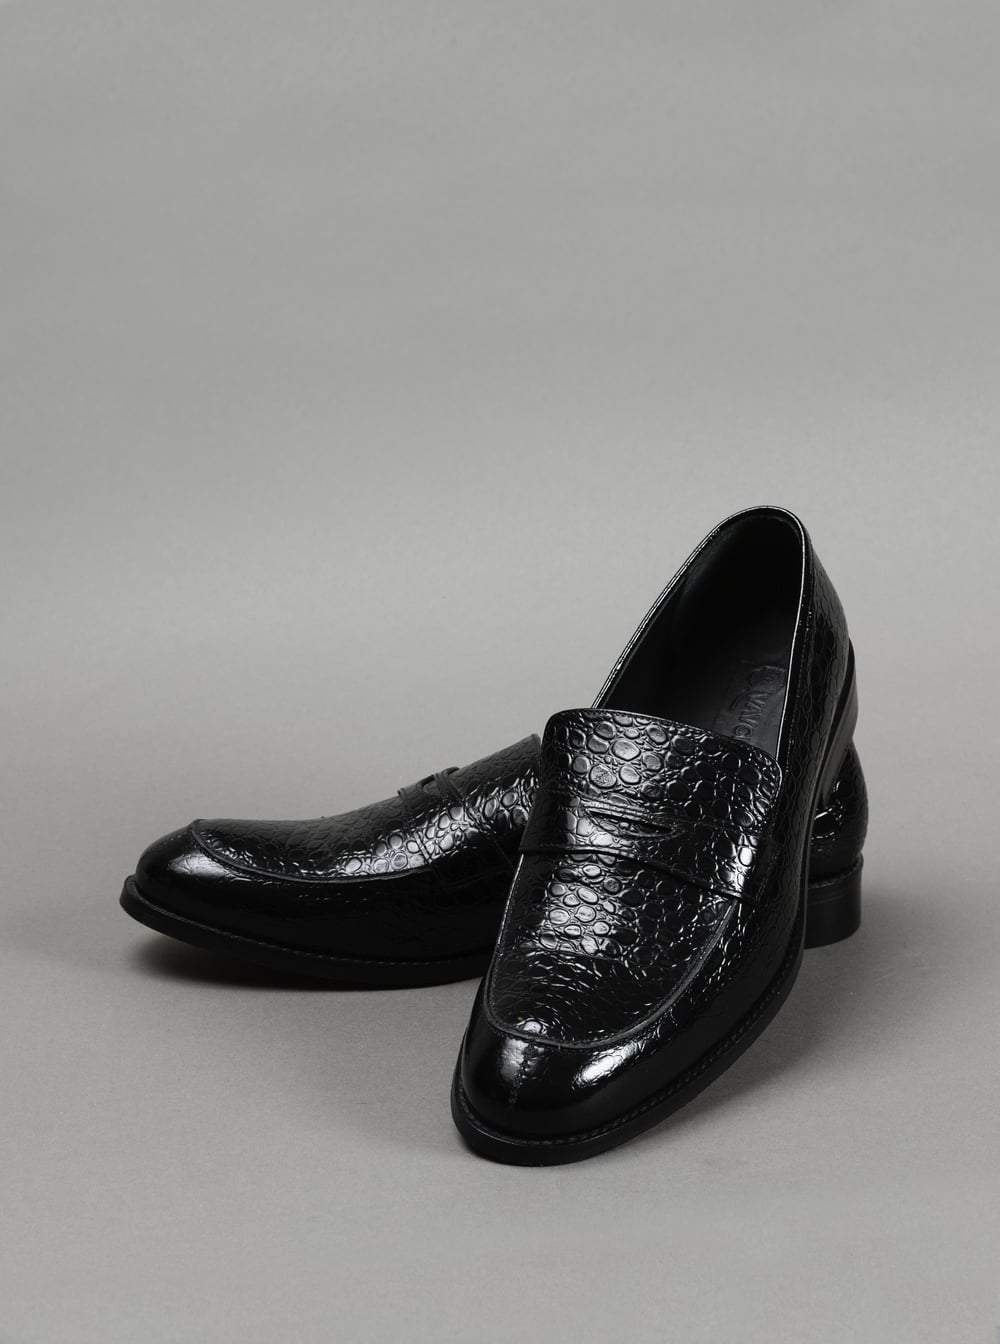 Black Bespoke Loafer Shoes